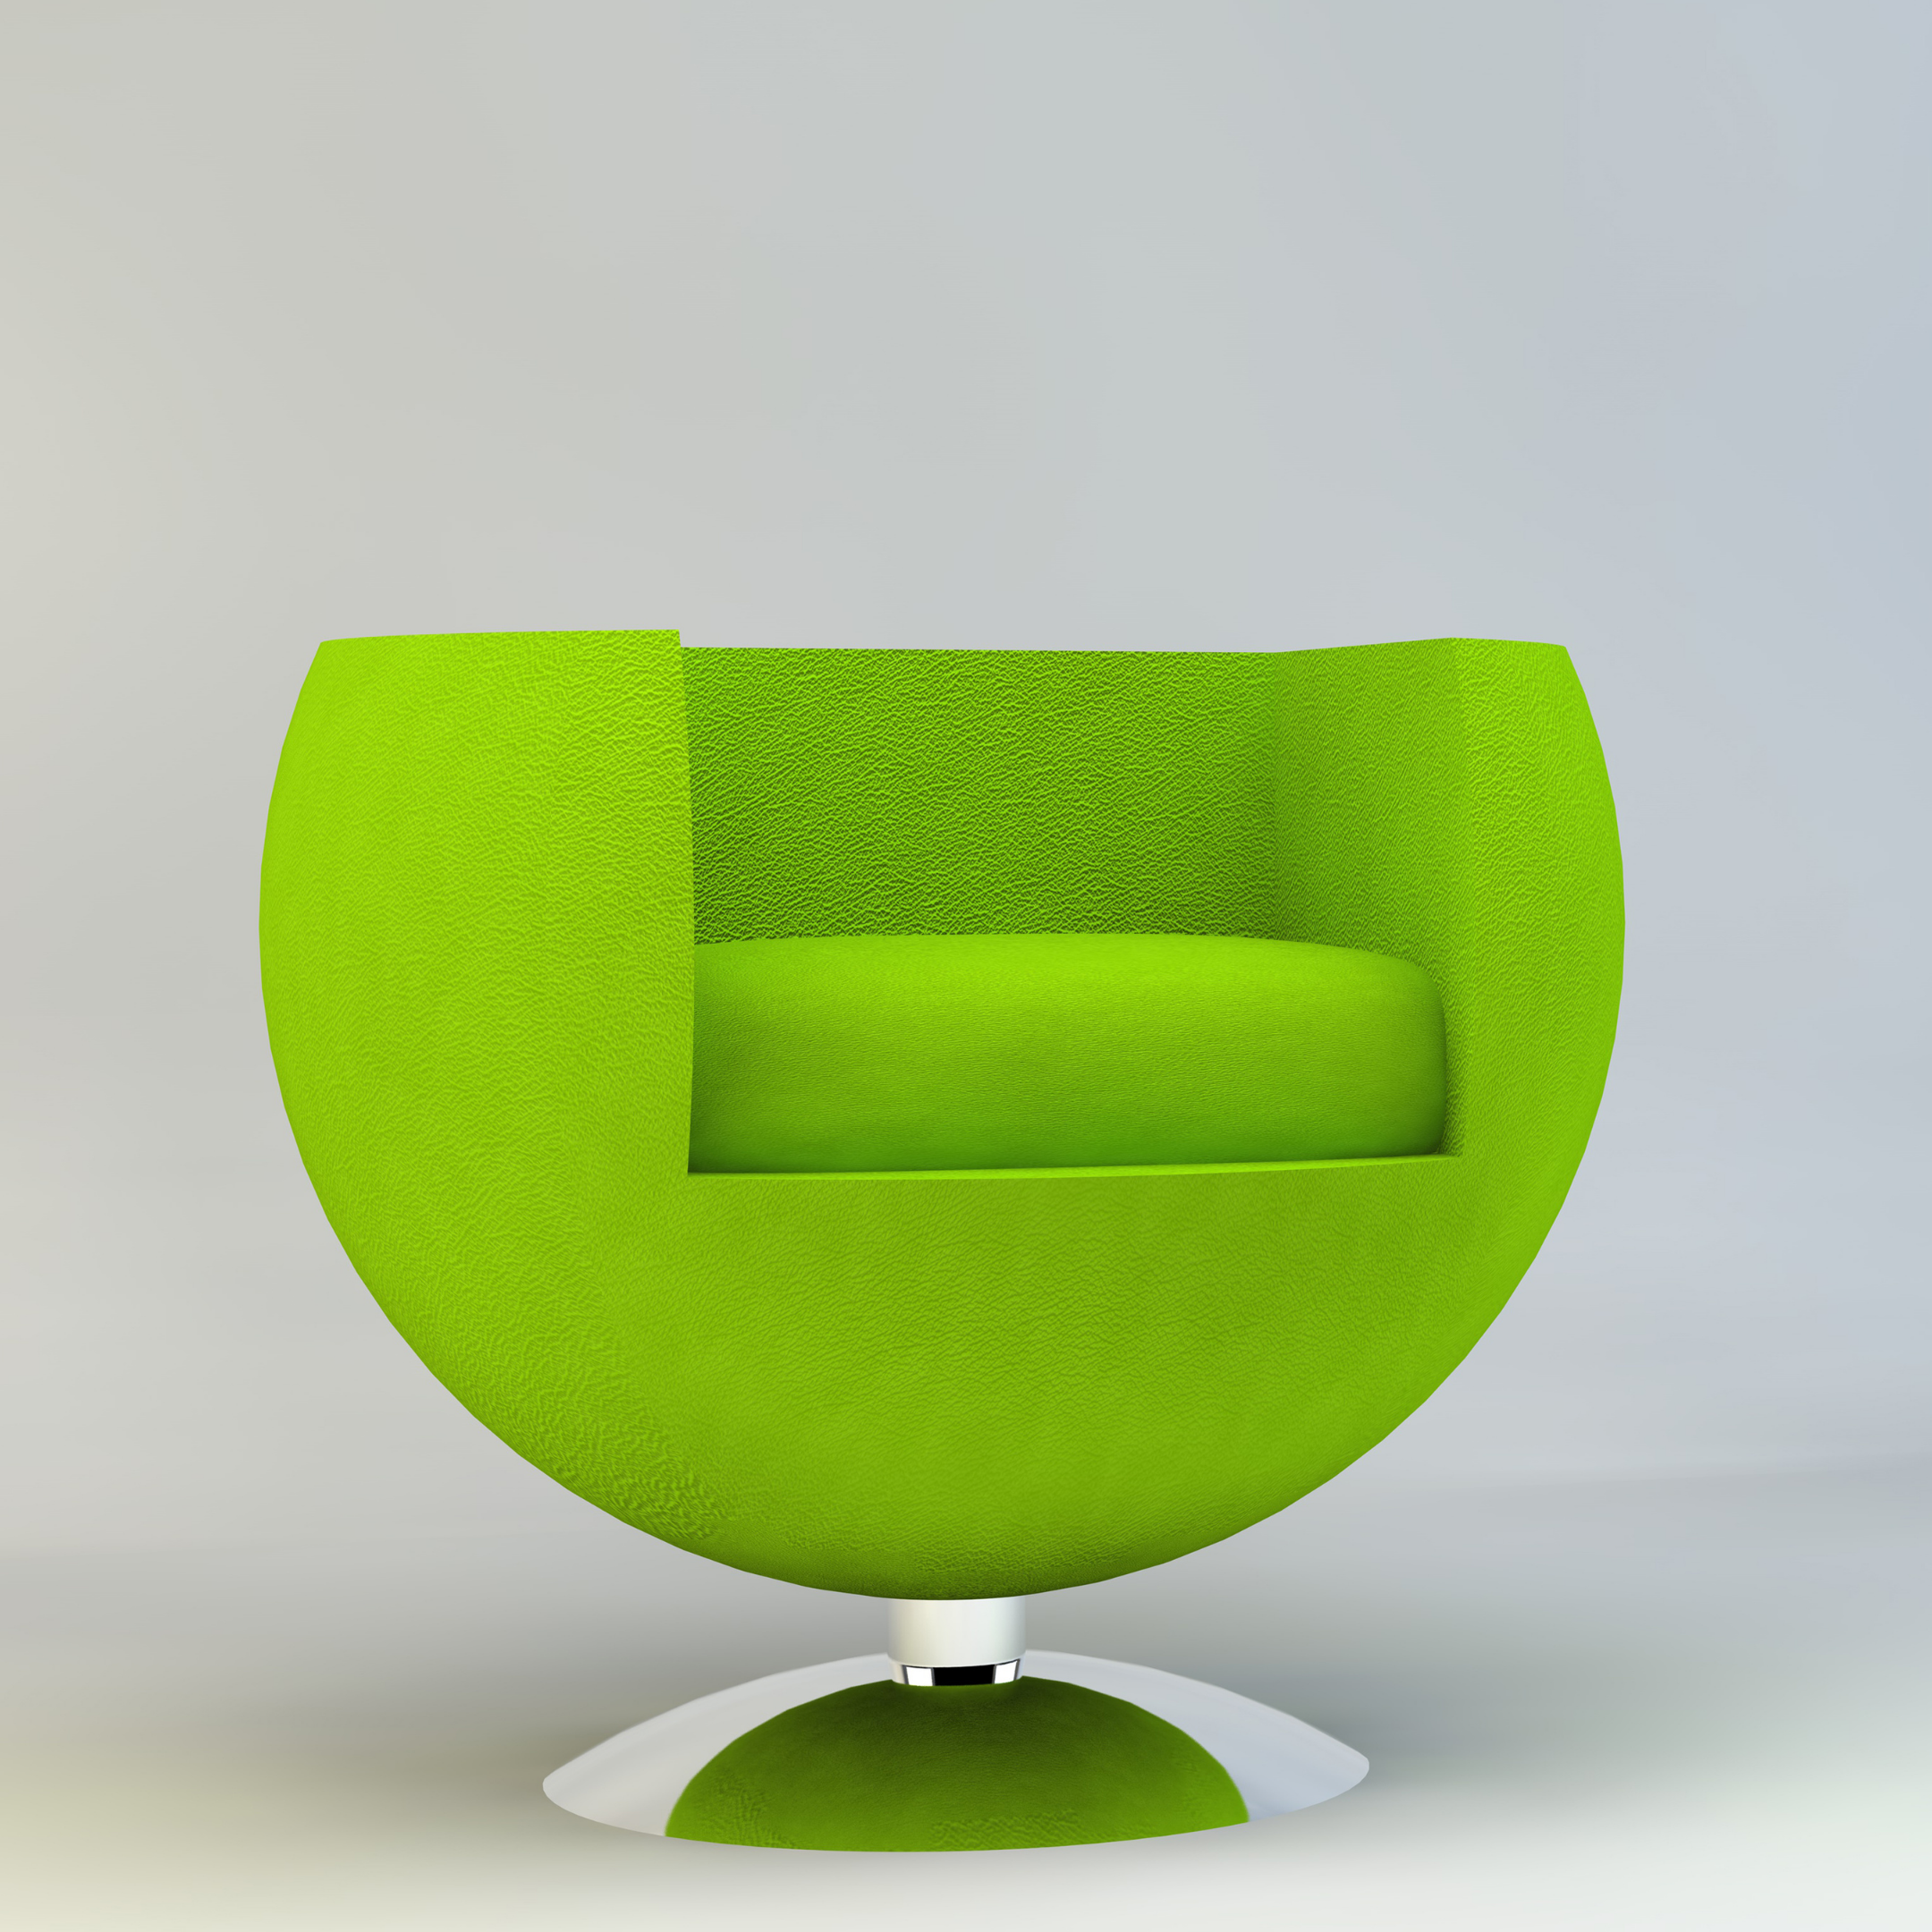 Die grüne Möbelbranche